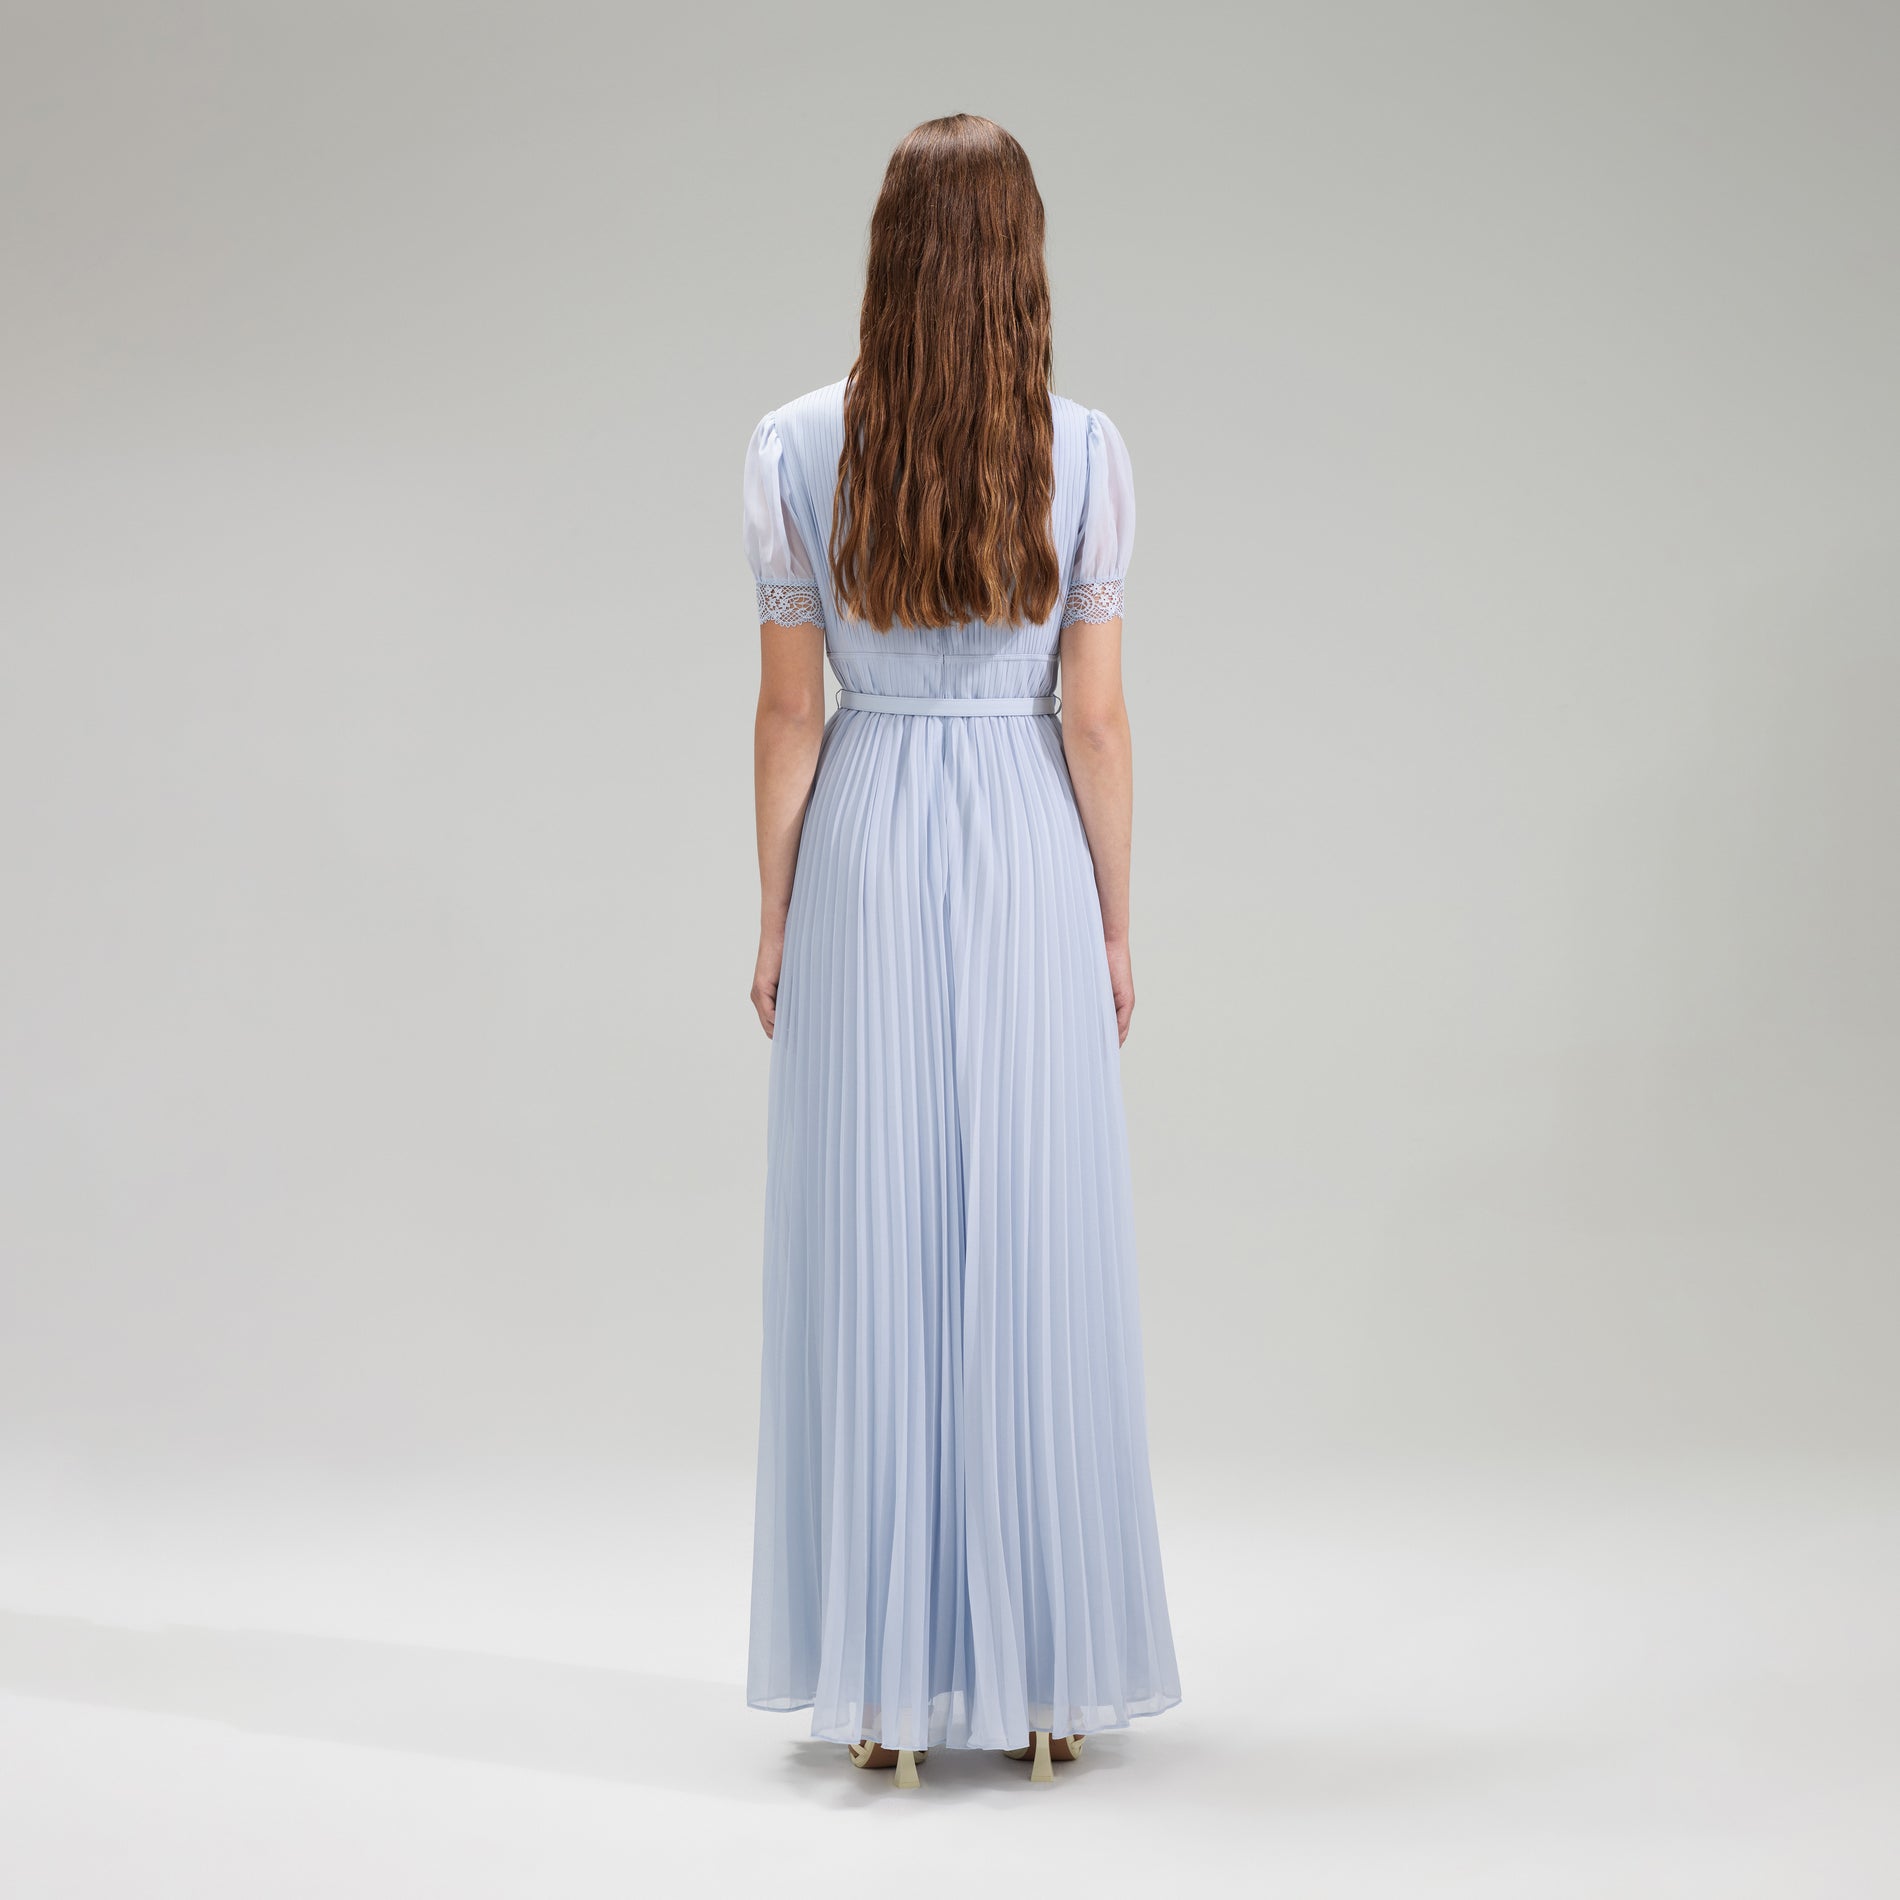 A woman wearing the Blue Chiffon Pleated Maxi Dress